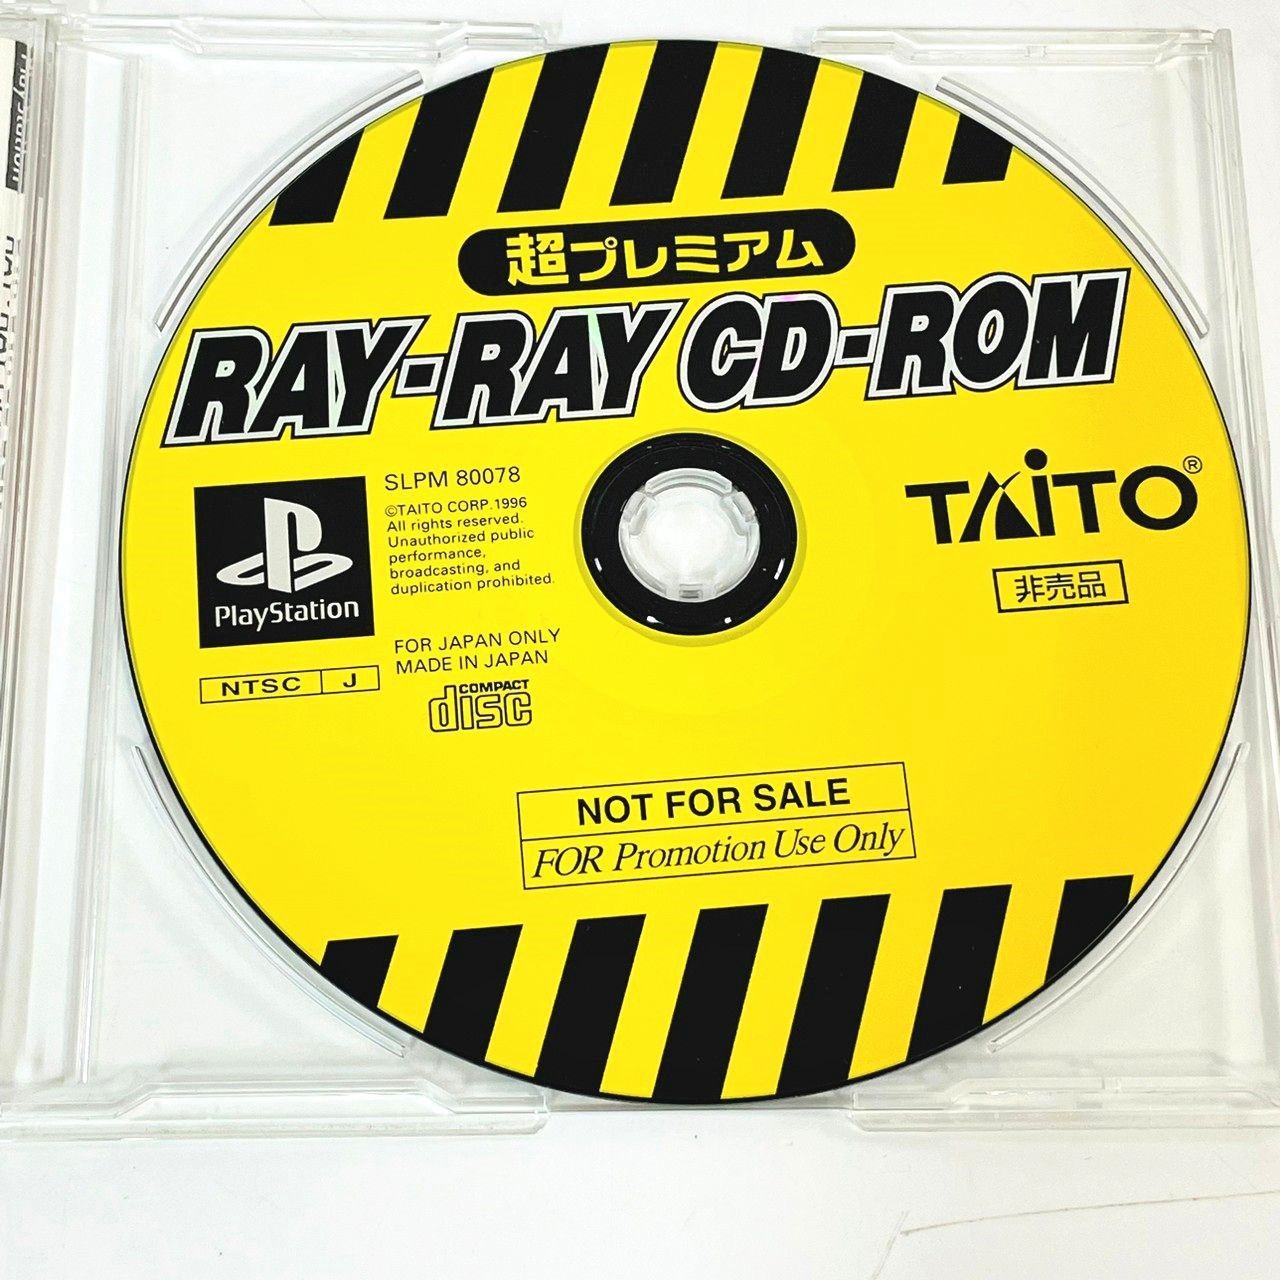 ◇【非売品】PS RAY-RAY CD-ROM レイストーム RAYSTORM レイトレーサー 